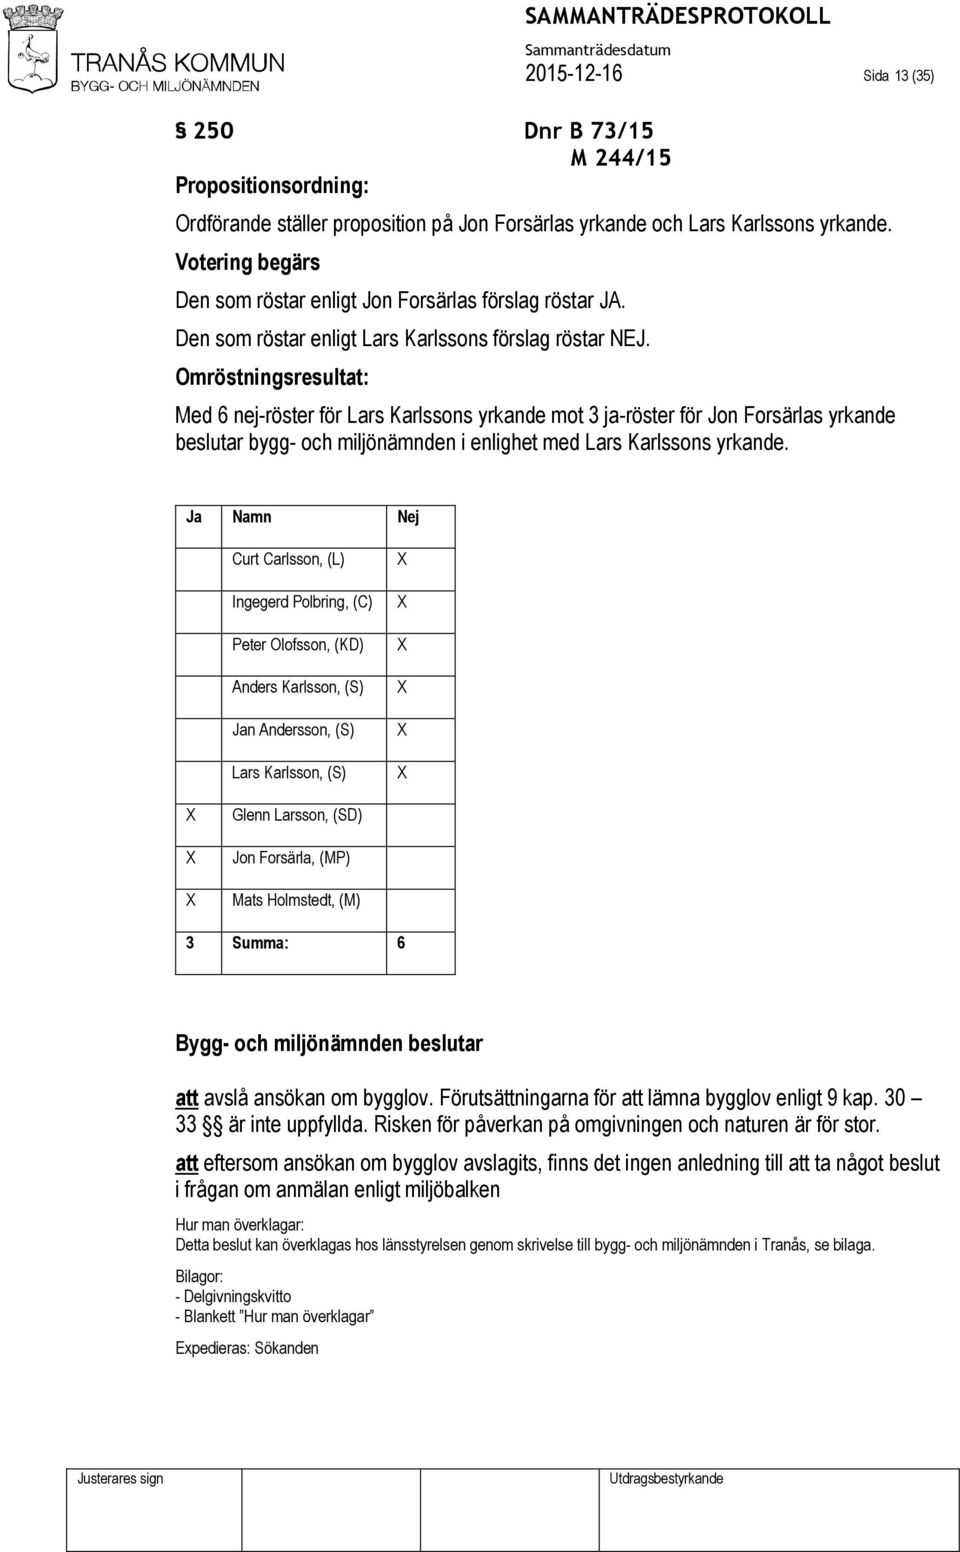 Omröstningsresultat: Med 6 nej-röster för Lars Karlssons yrkande mot 3 ja-röster för Jon Forsärlas yrkande beslutar bygg- och miljönämnden i enlighet med Lars Karlssons yrkande.